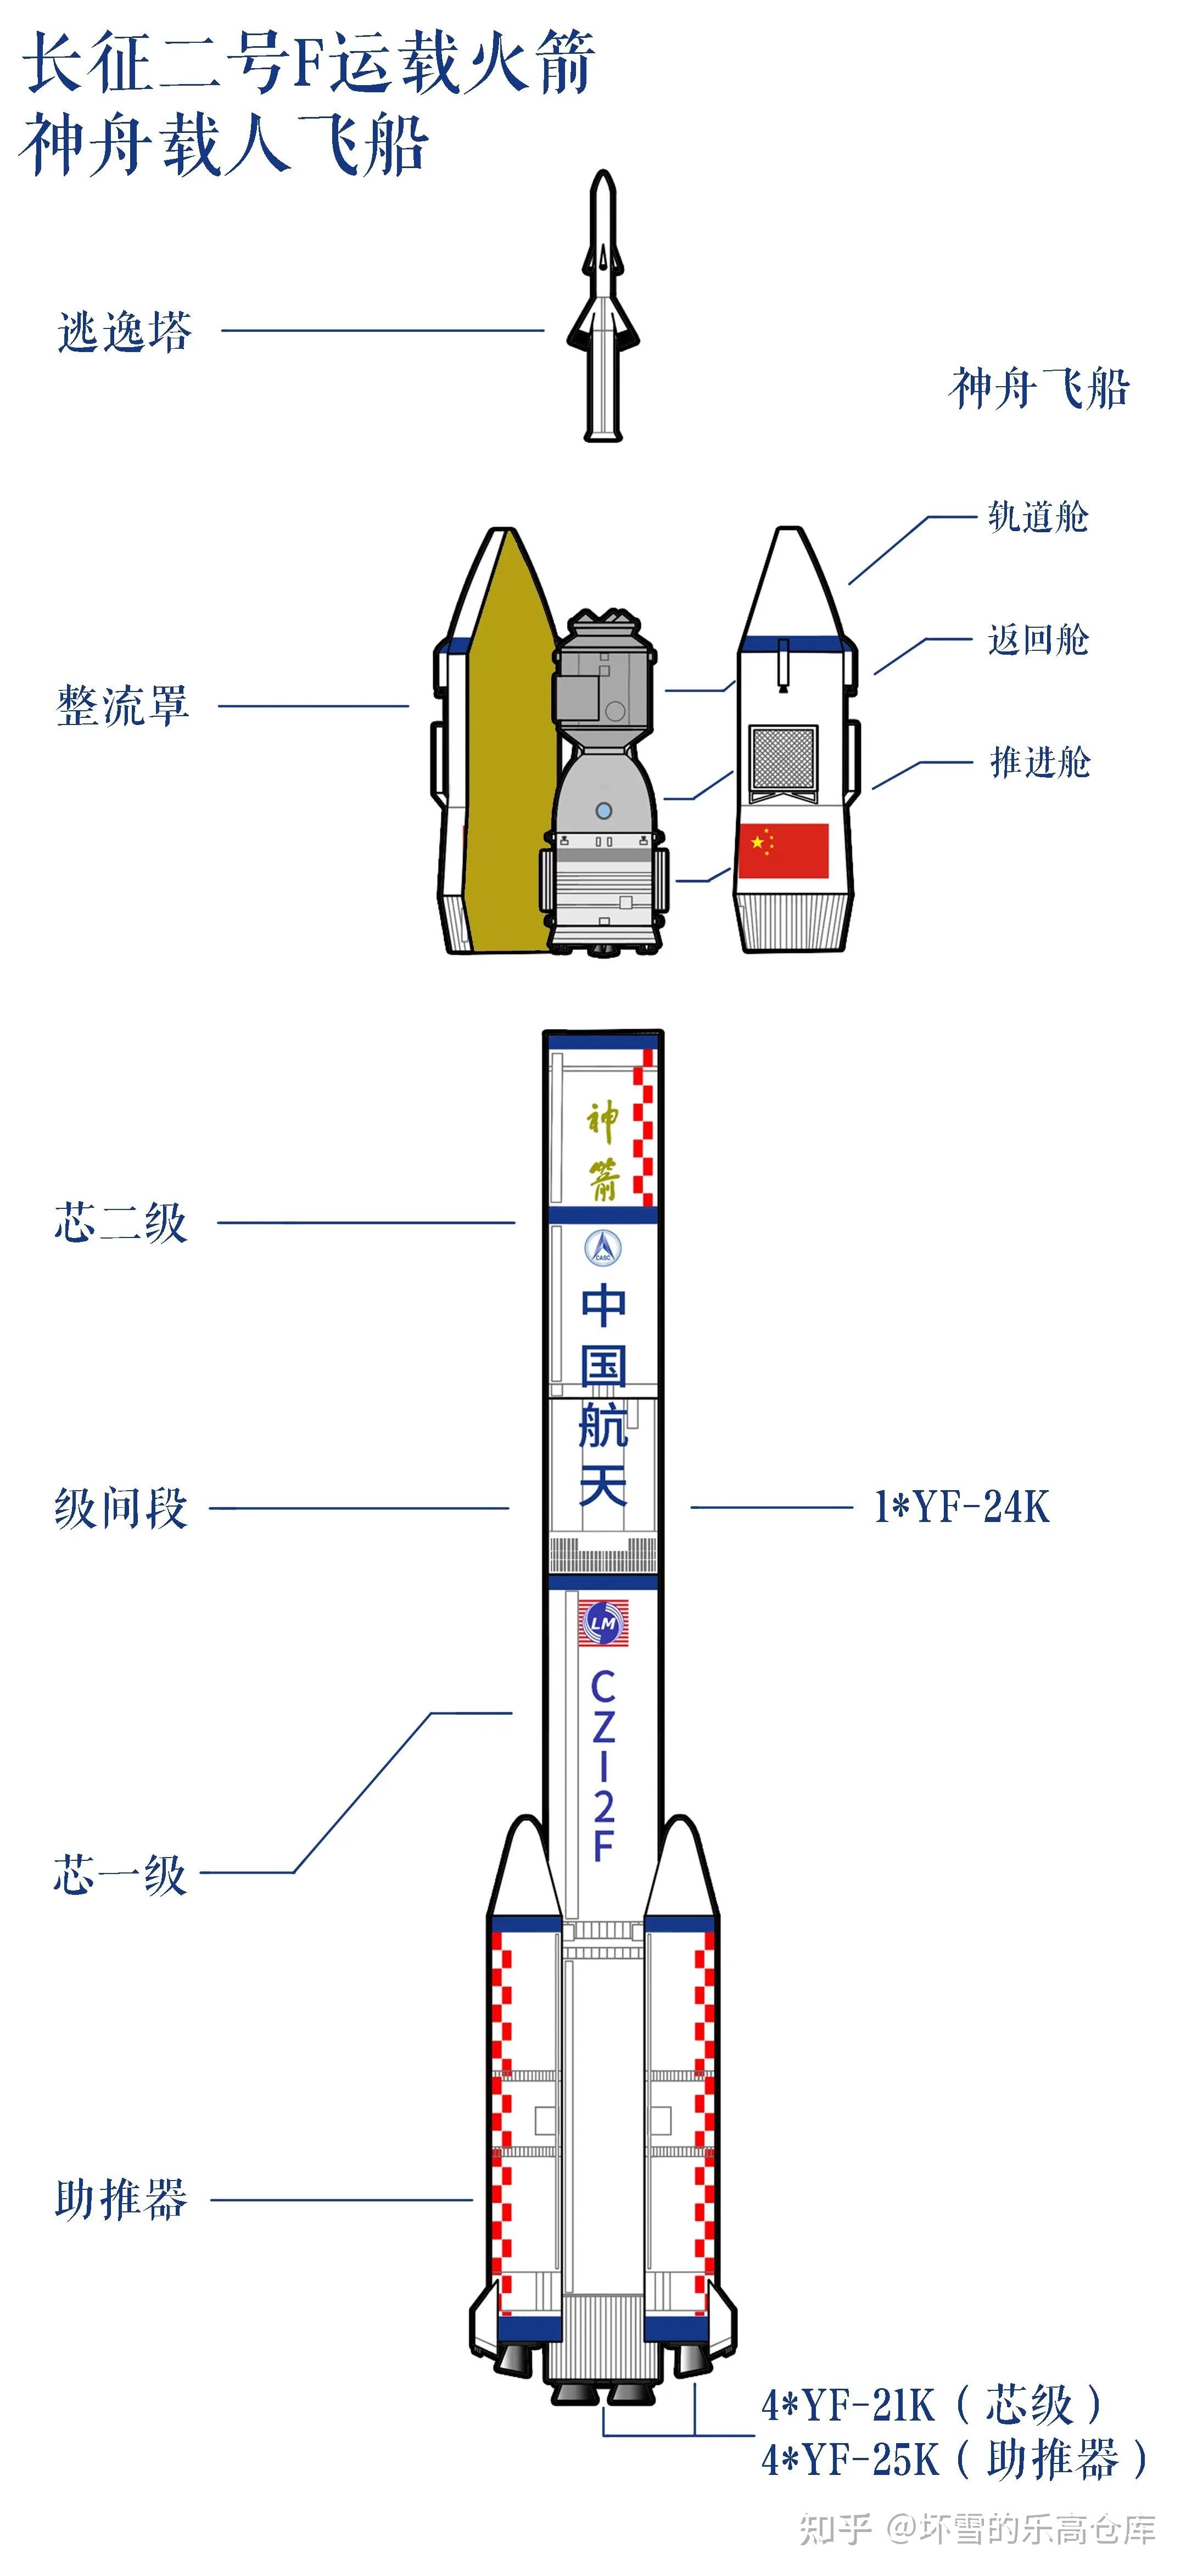 火箭结构简图图片